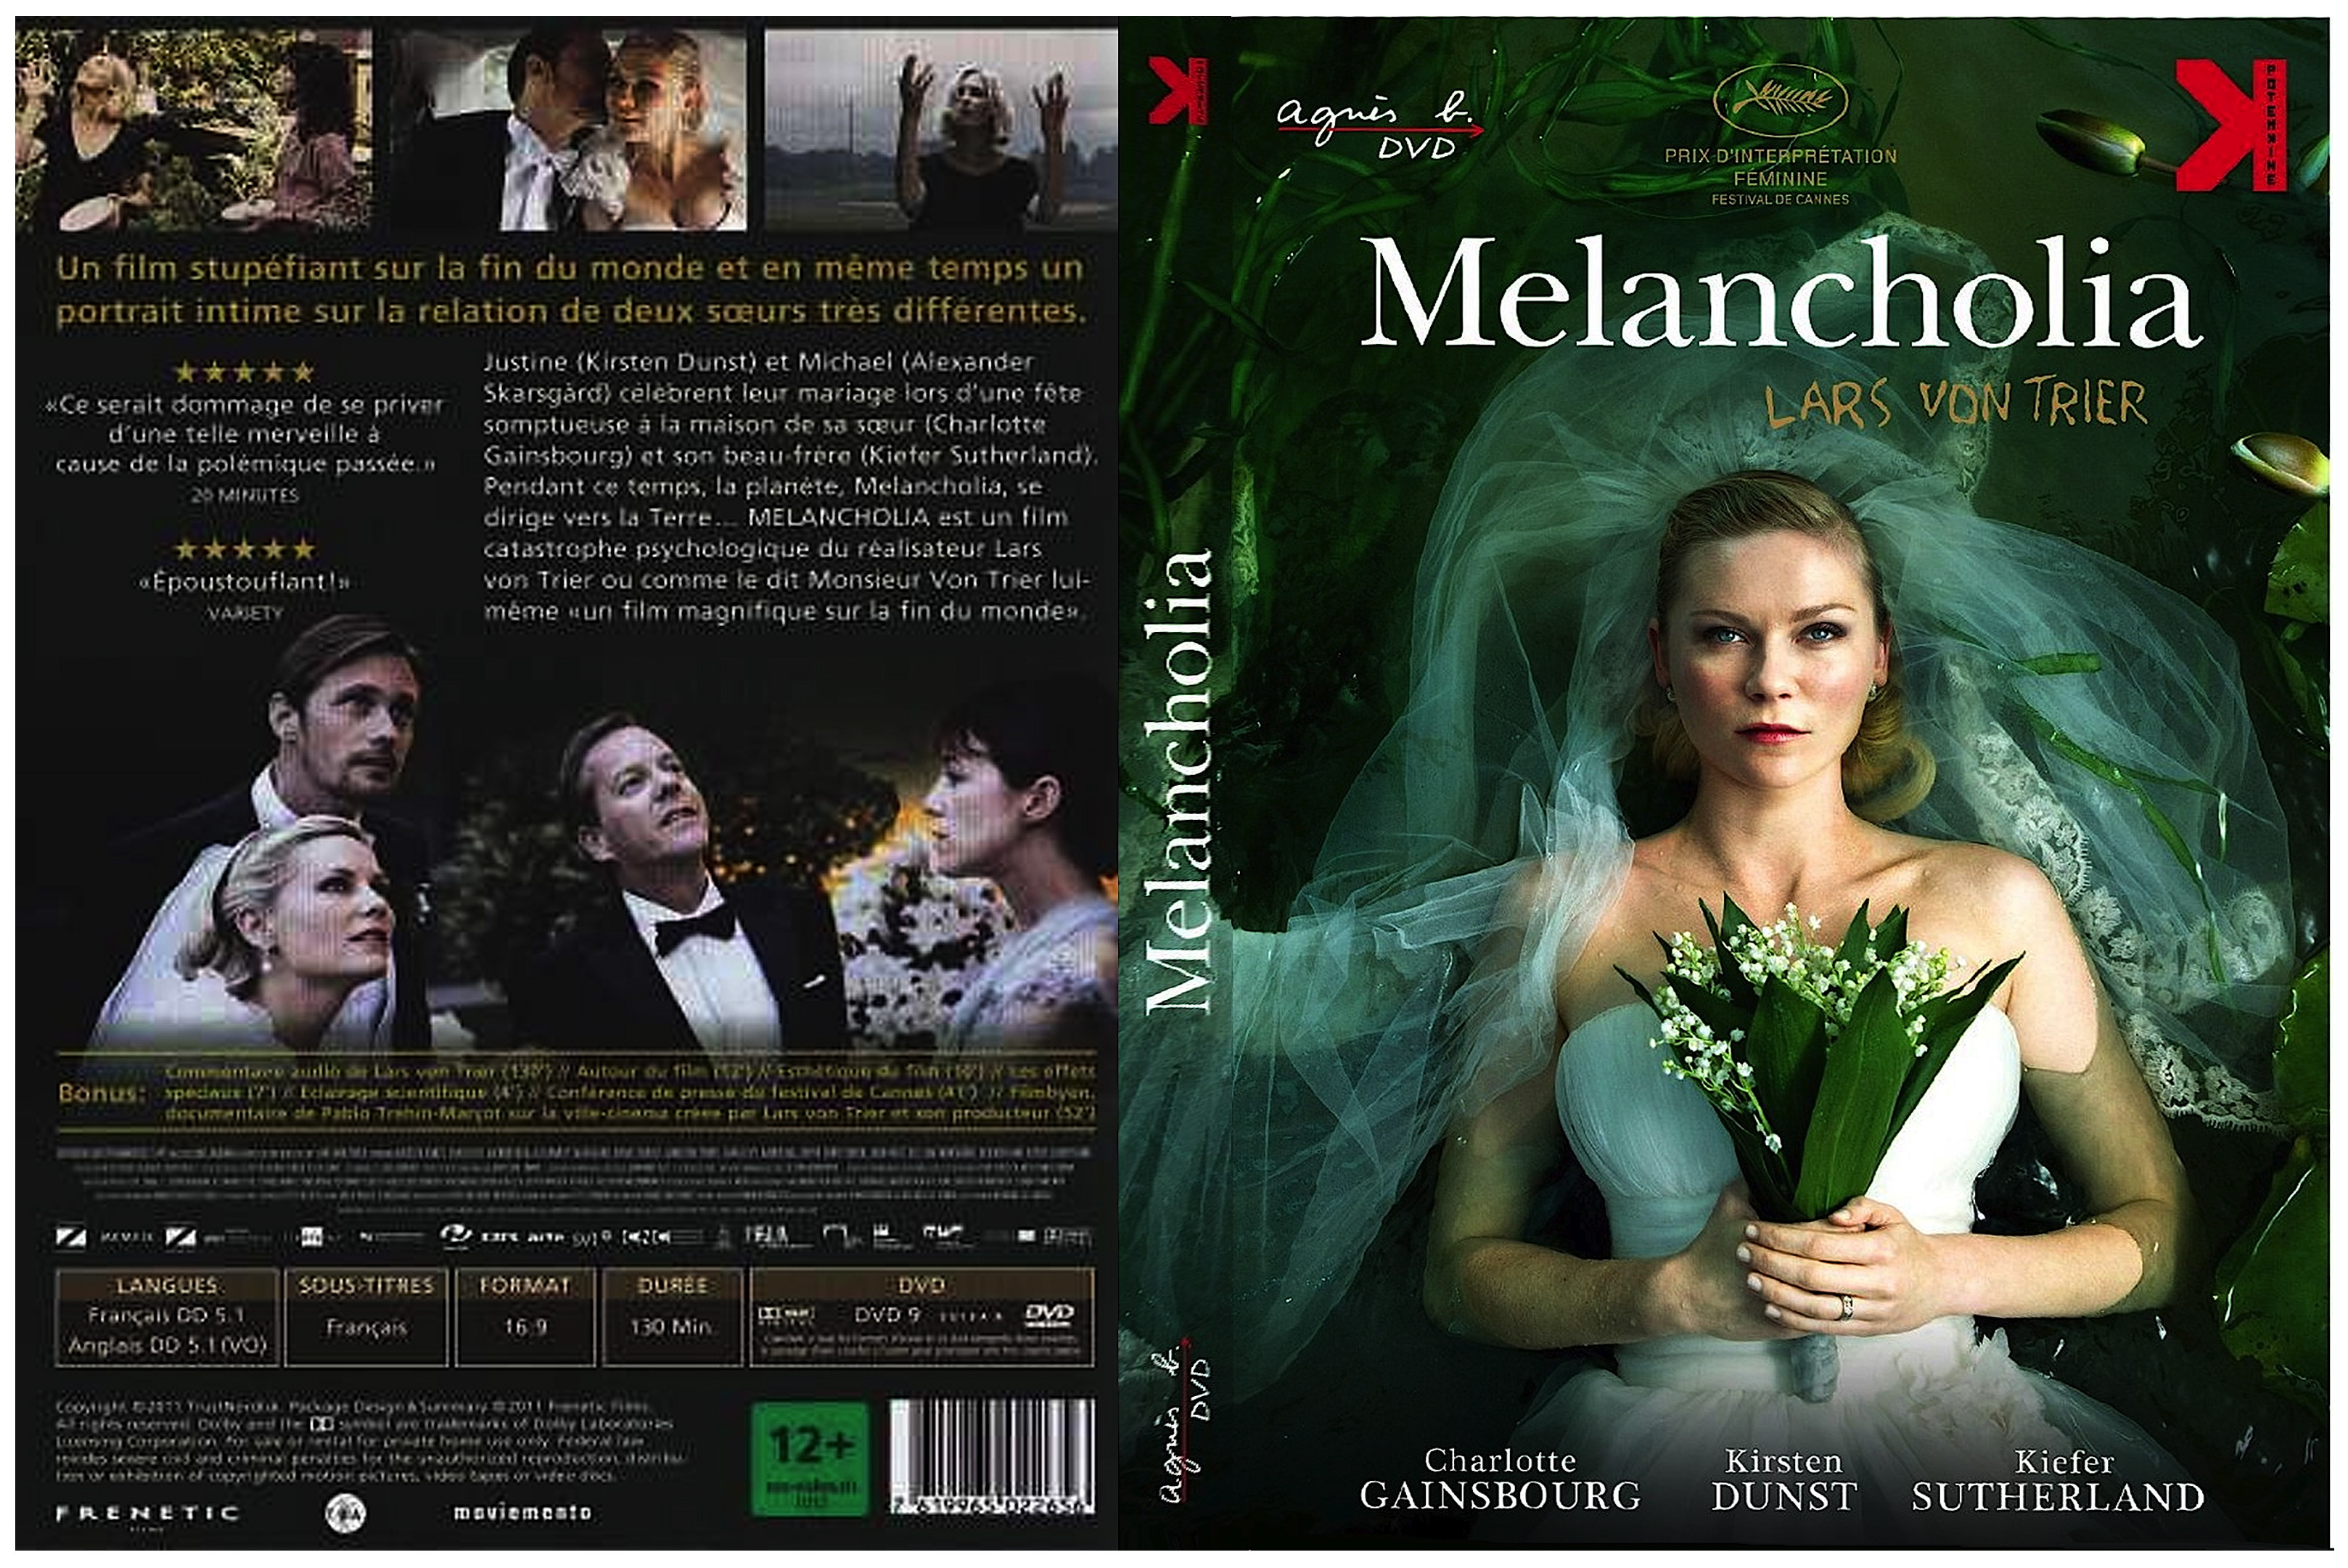 Jaquette DVD Melancholia custom